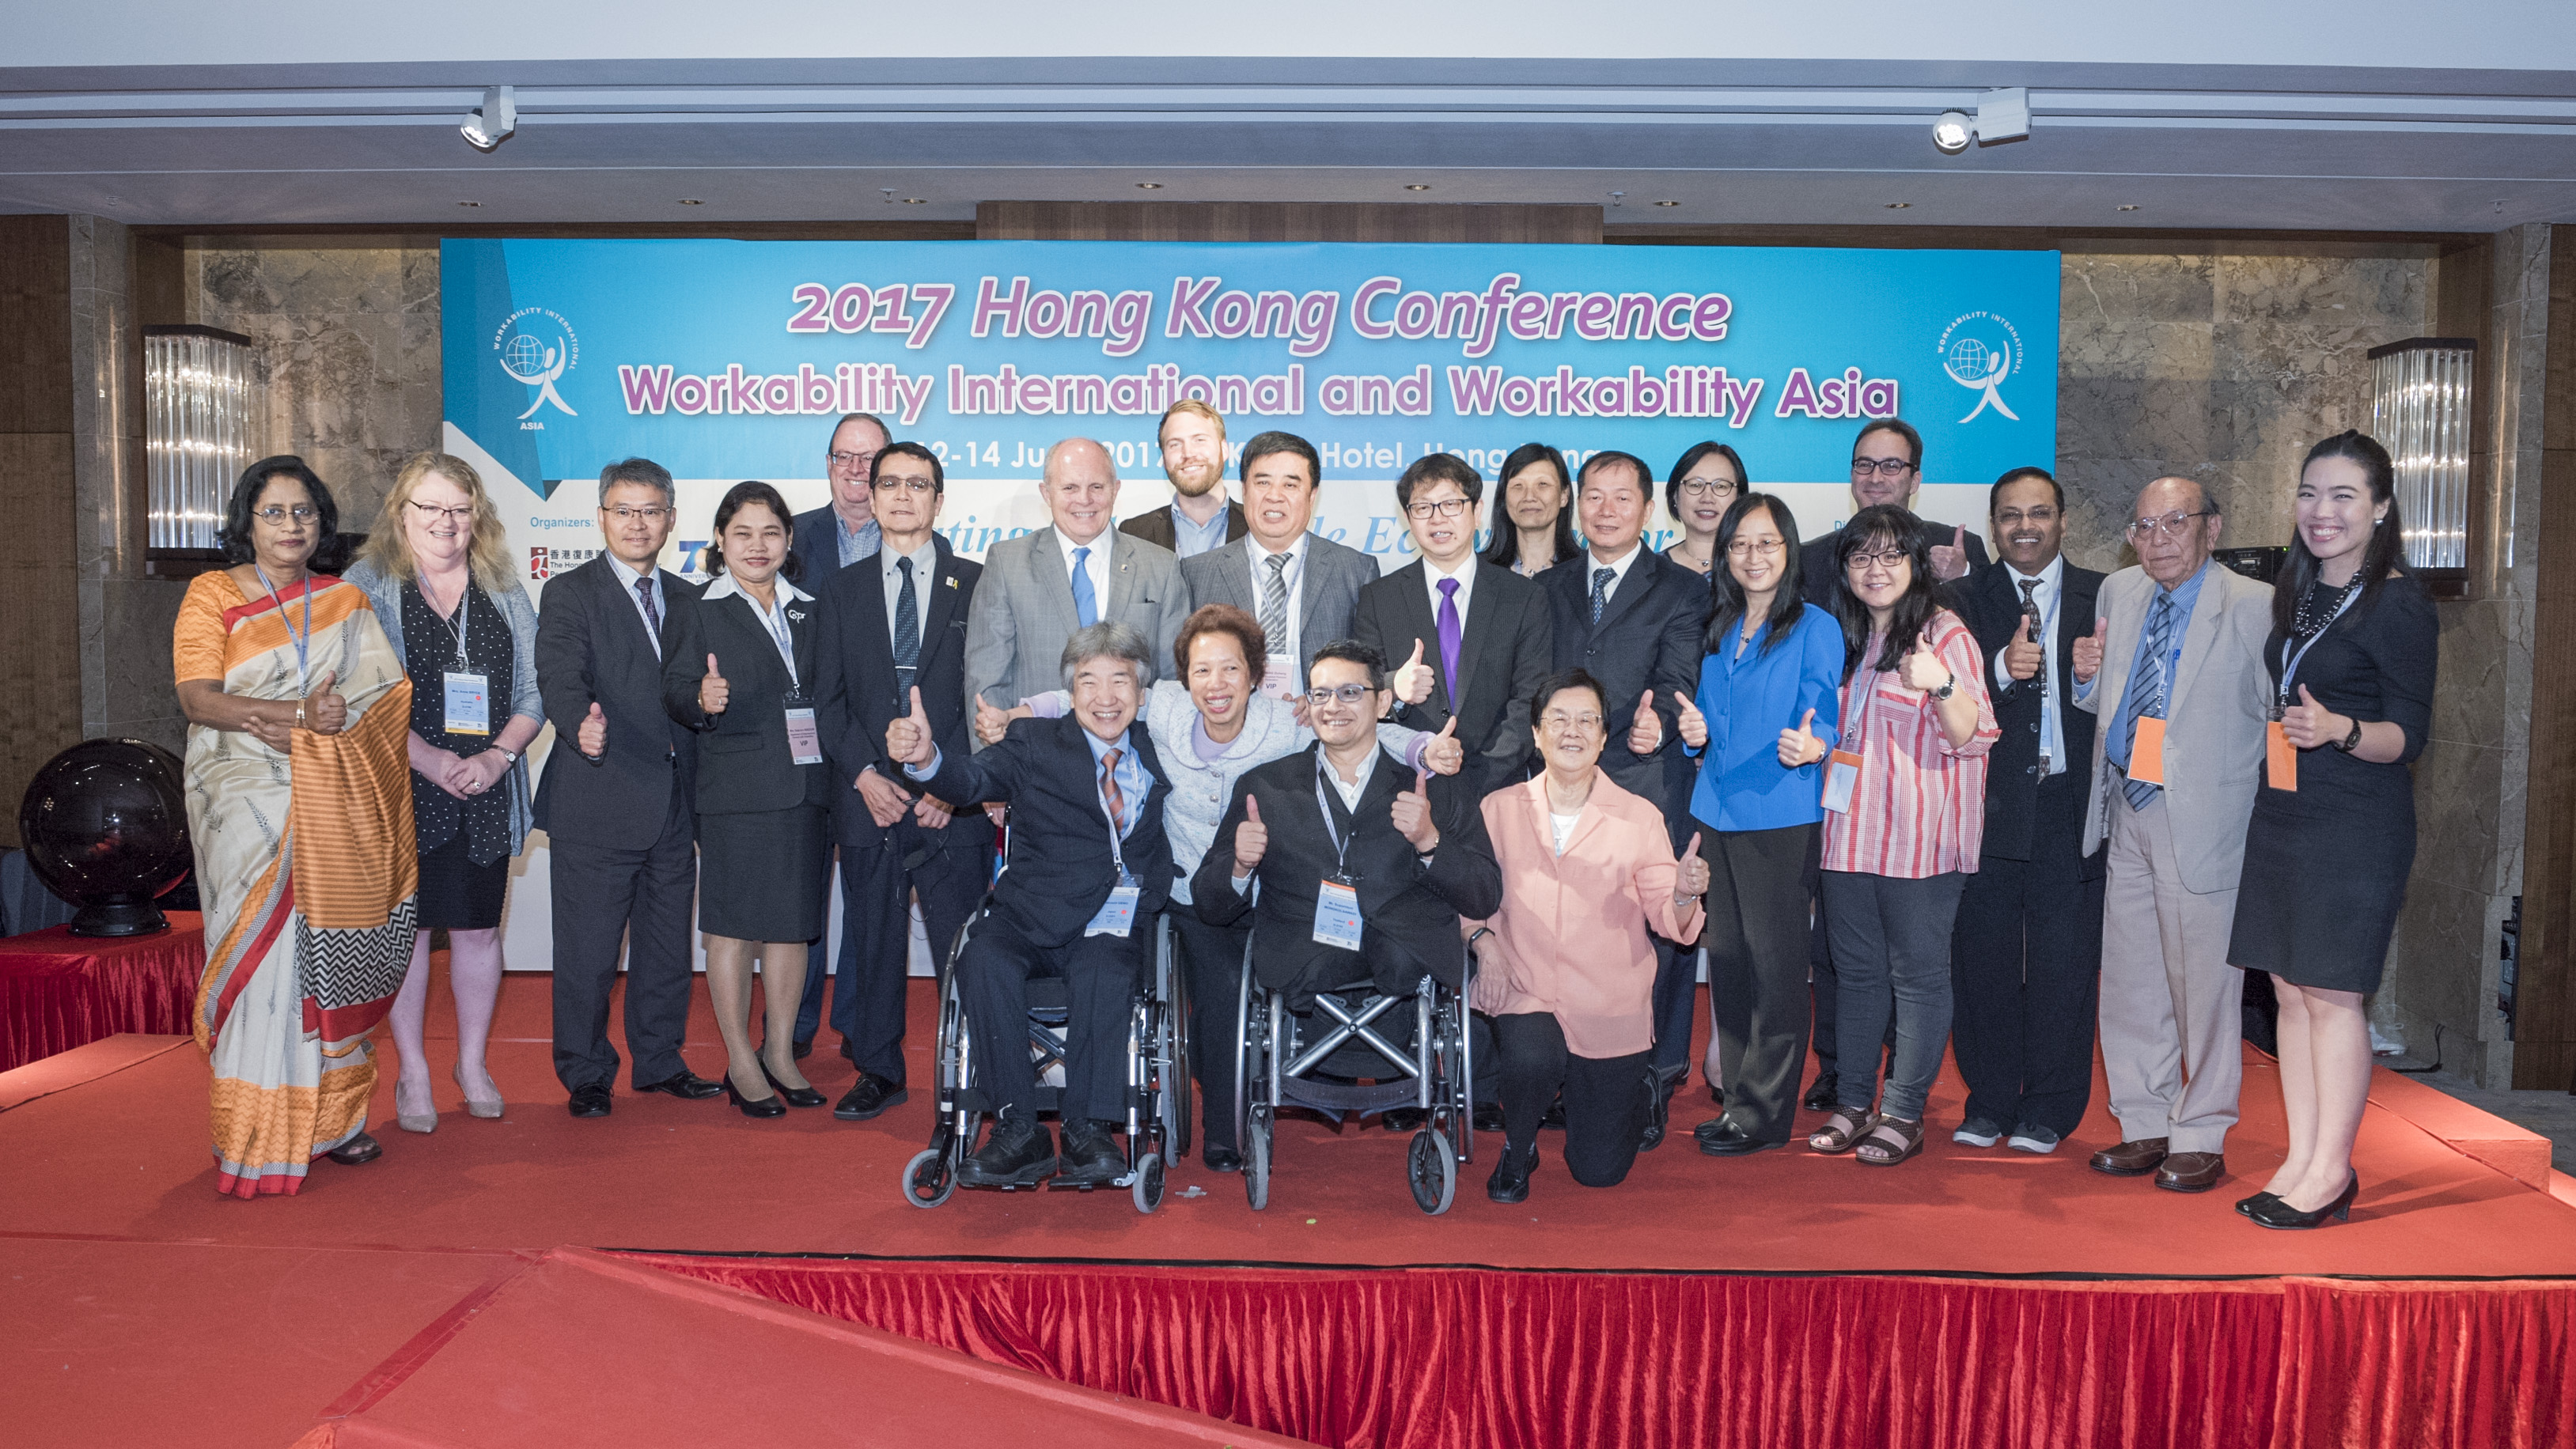 蕭偉強出席由香港復康聯會及香港社會服務聯會主辦的2017年香港會議－－國際工作組織及亞洲工作組織國際會議。圖示蕭偉強（第二排右七）與一眾與會者合照。